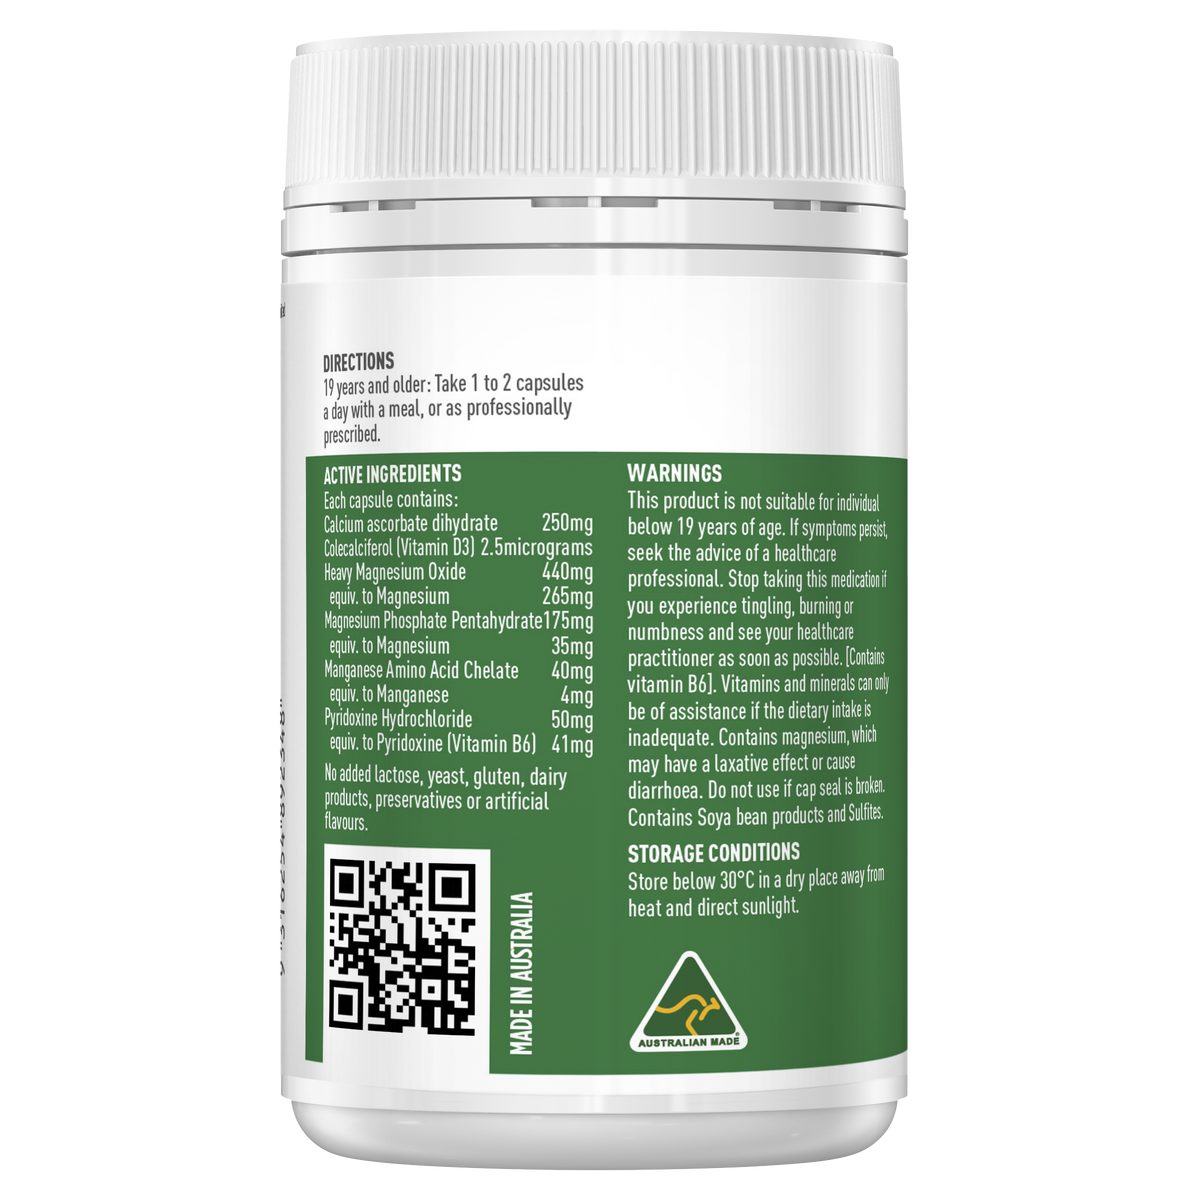 Healthy Care Super Bio Magnesium - 100 Capsules